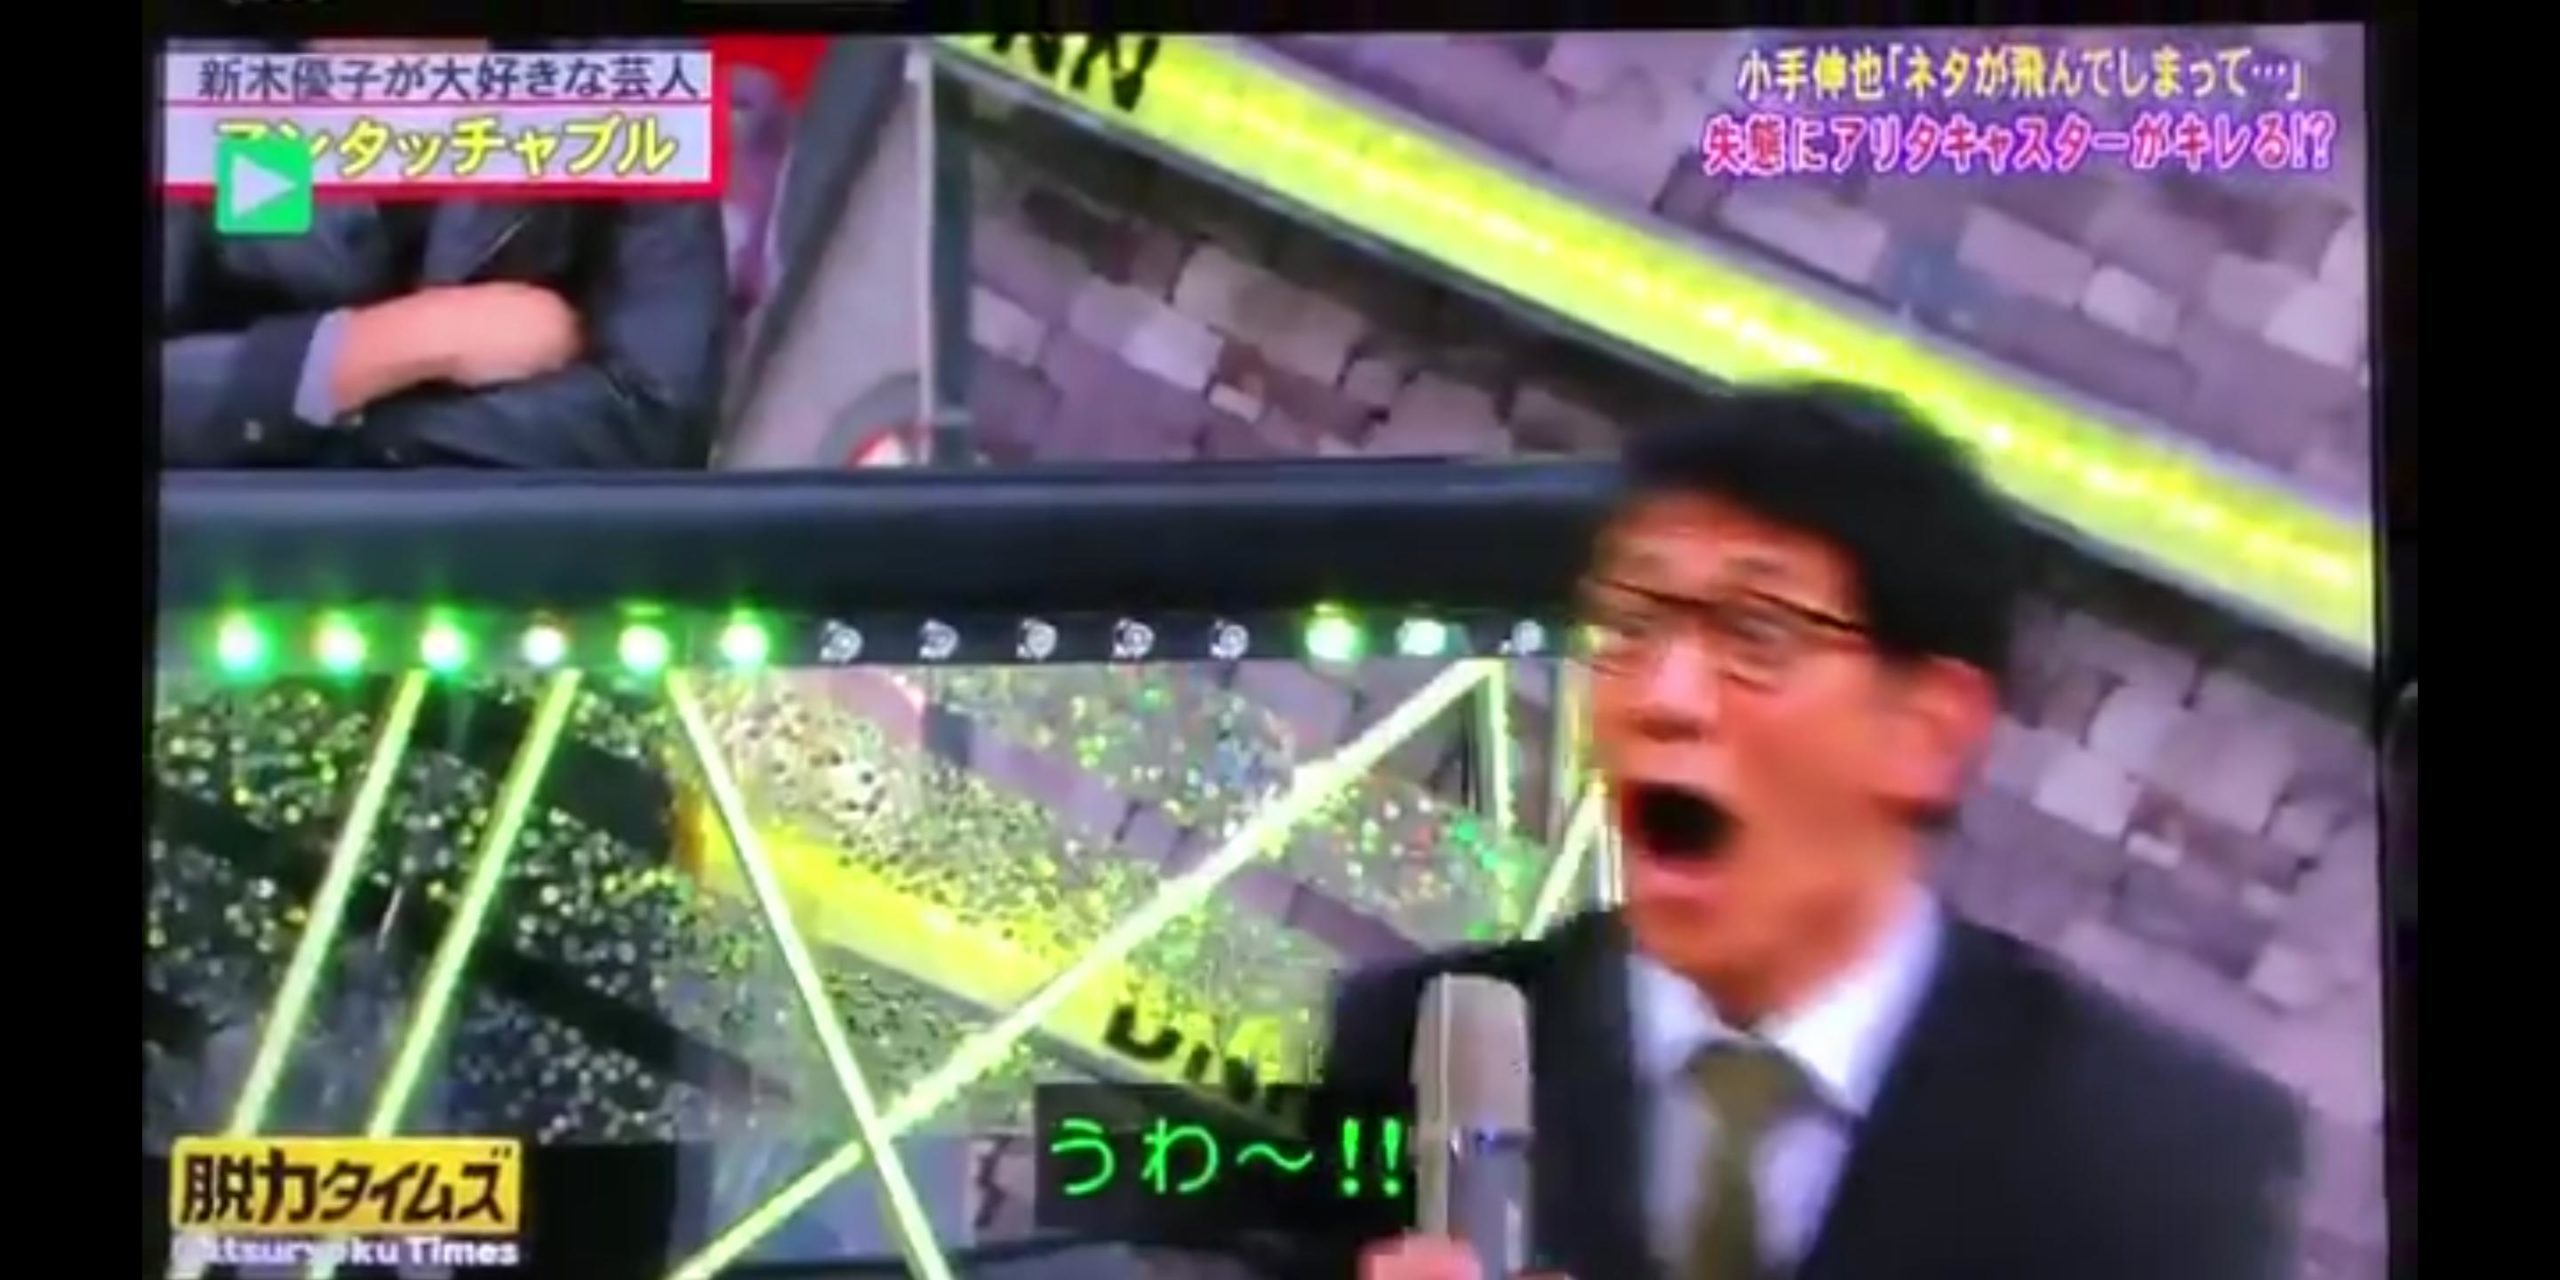 【漫才】アンタッチャブル、約10年ぶりのコンビ共演 『脱力タイムズ』での実現に柴田が大興奮